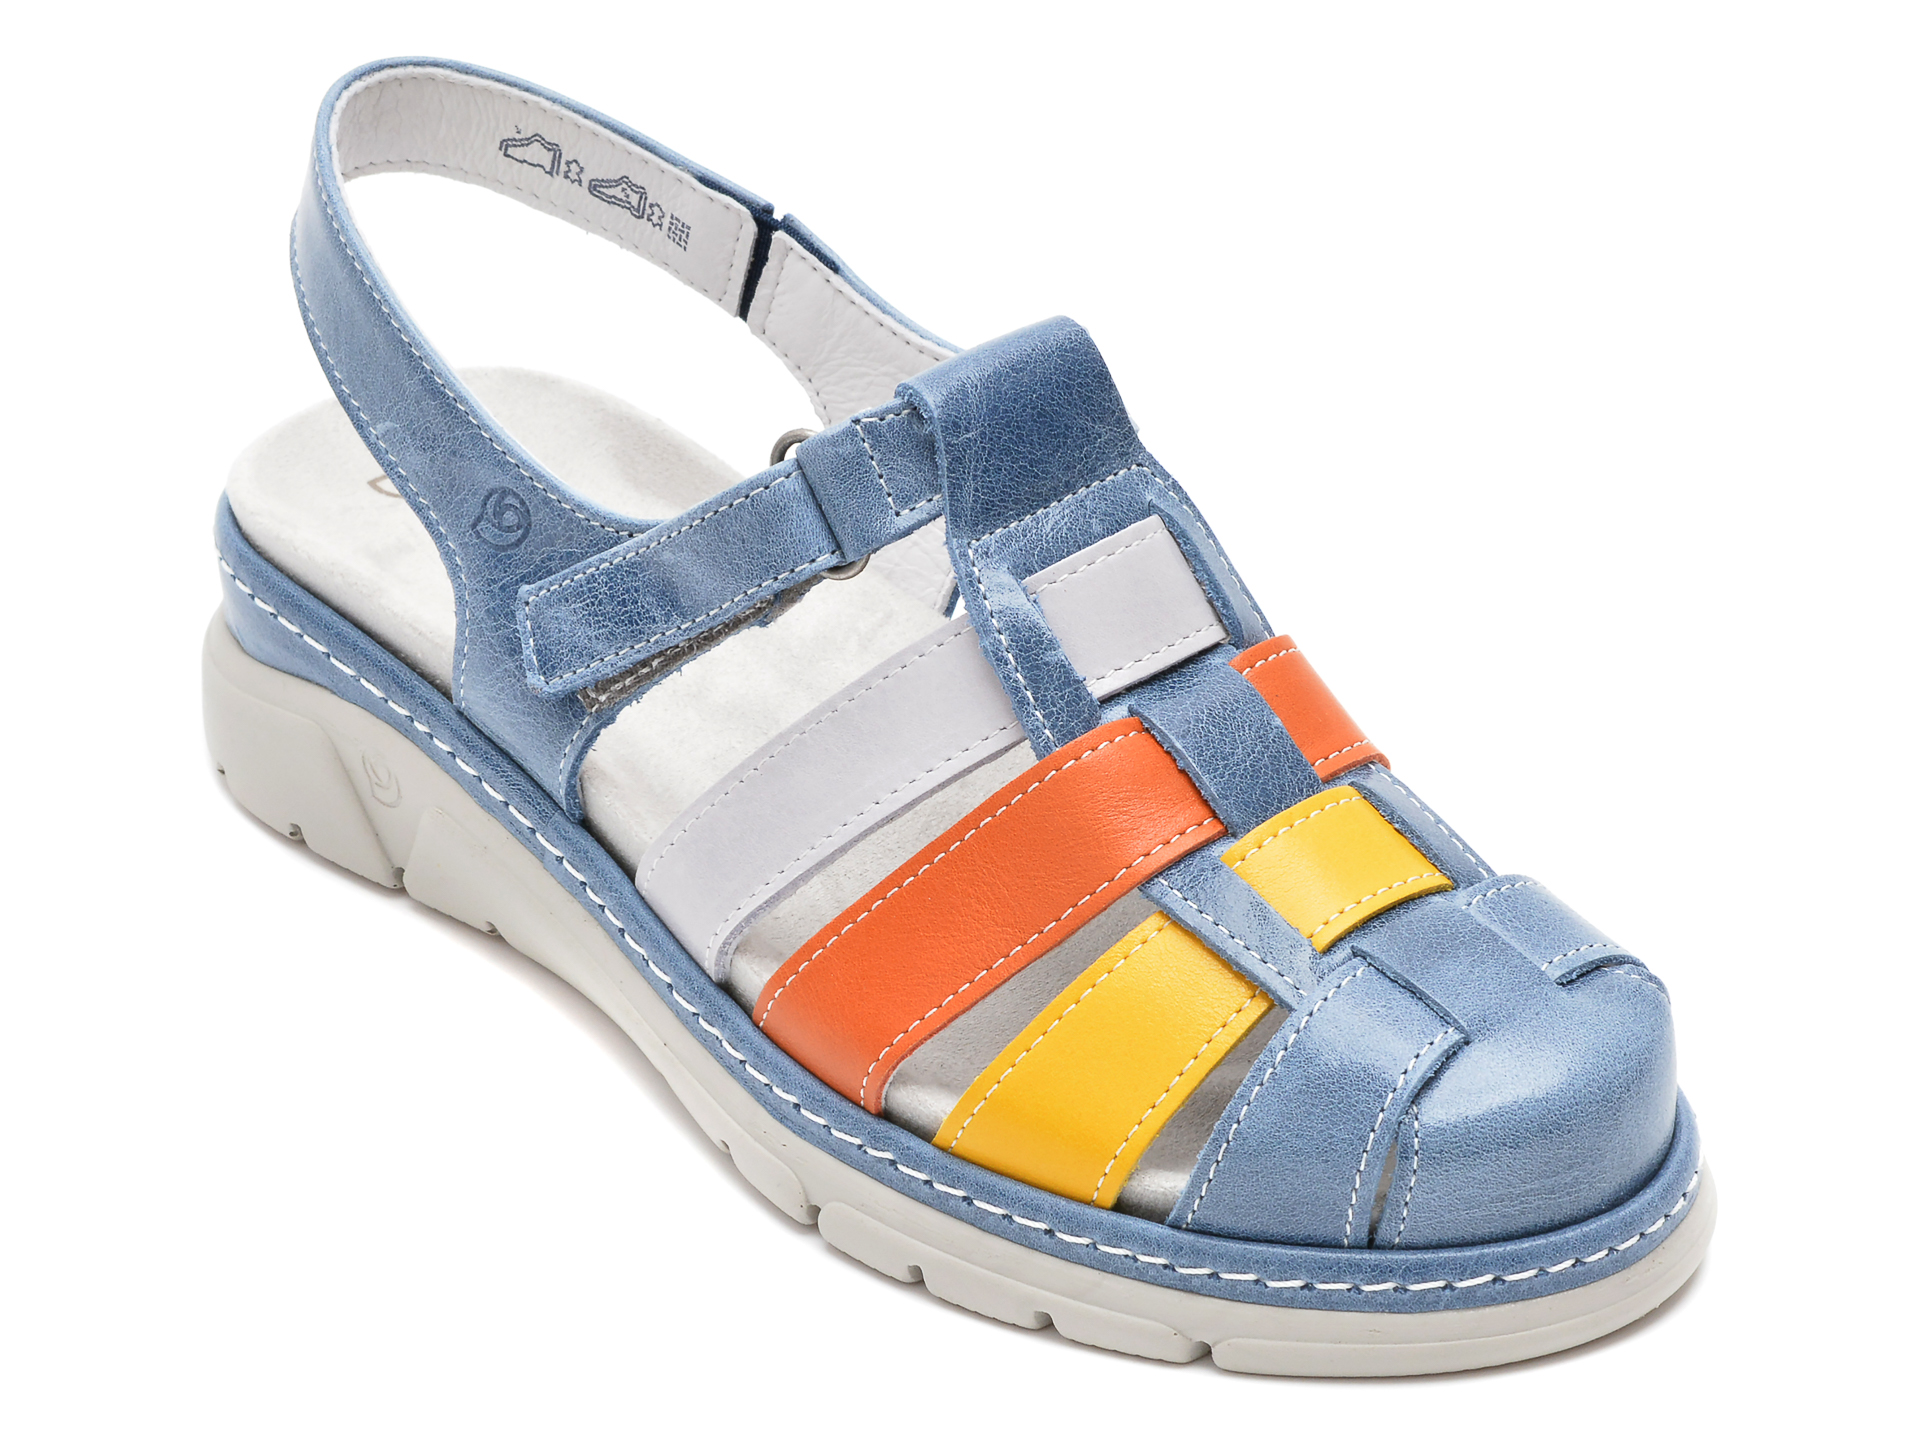 Sandale SUAVE albastre, 12519, din piele naturala /femei/sandale